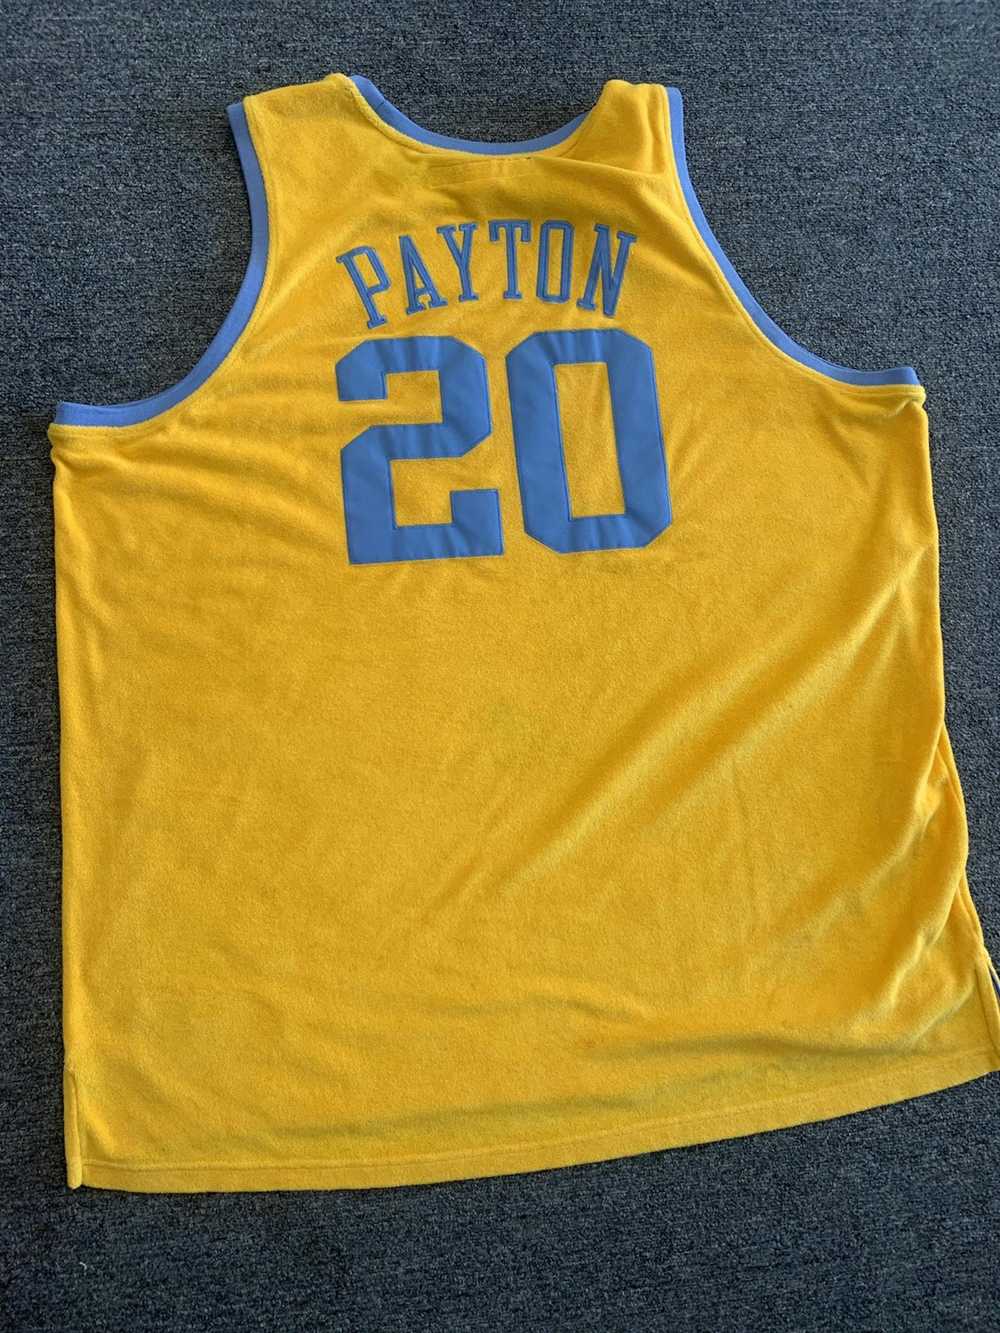 NBA × Reebok Payton Jersey #20 MPLS. - image 2